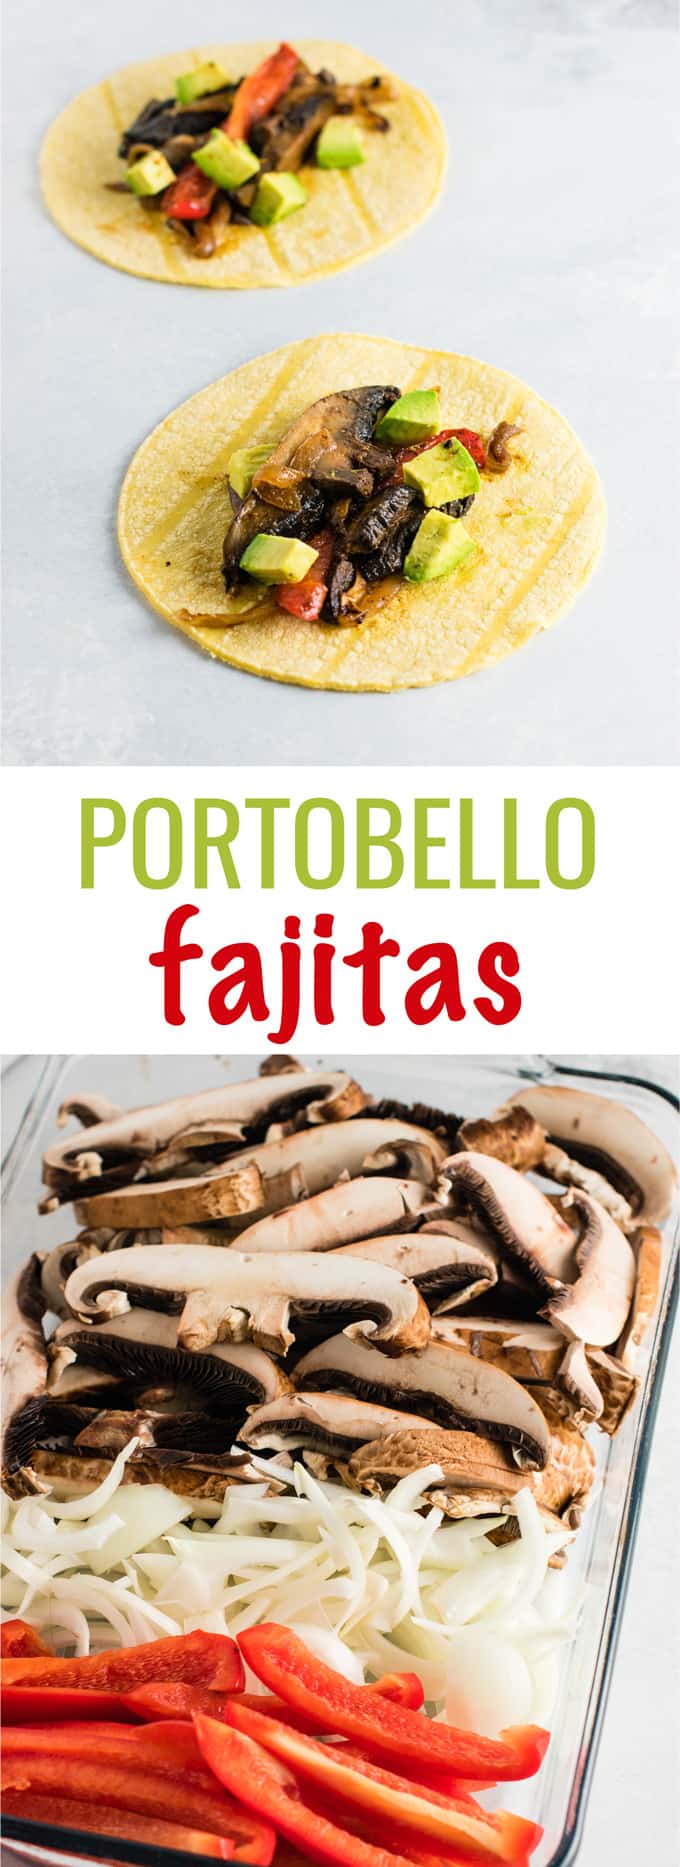 image with text "portobello fajitas"